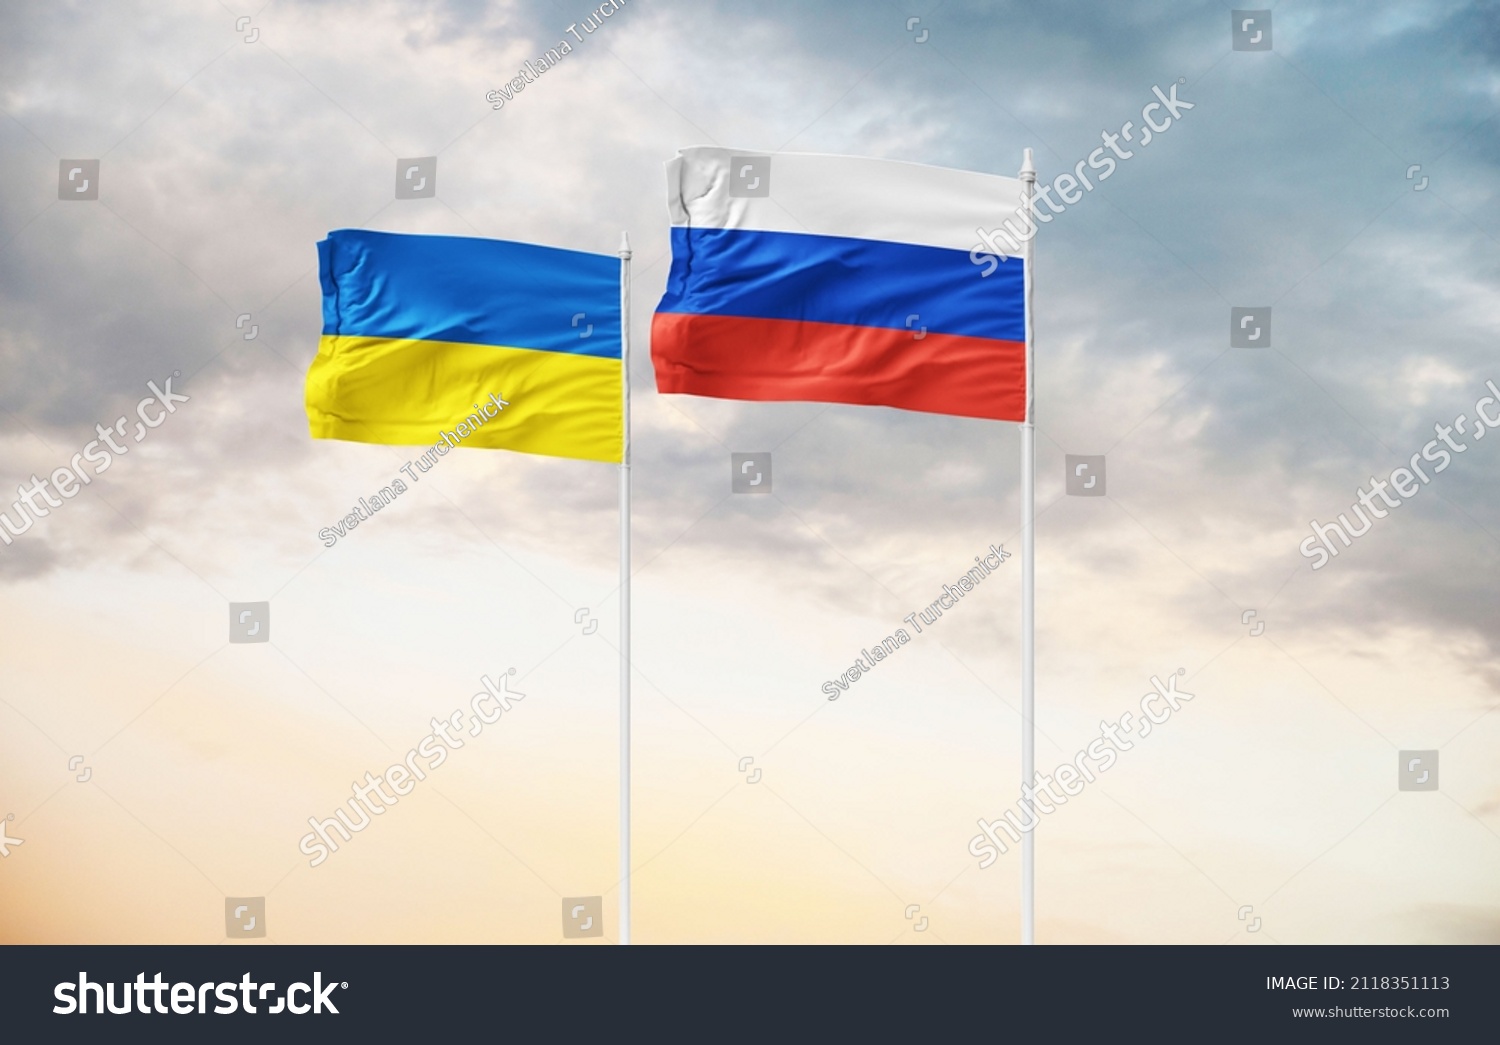 ukraine russia conflict 2022 escalation #2118351113